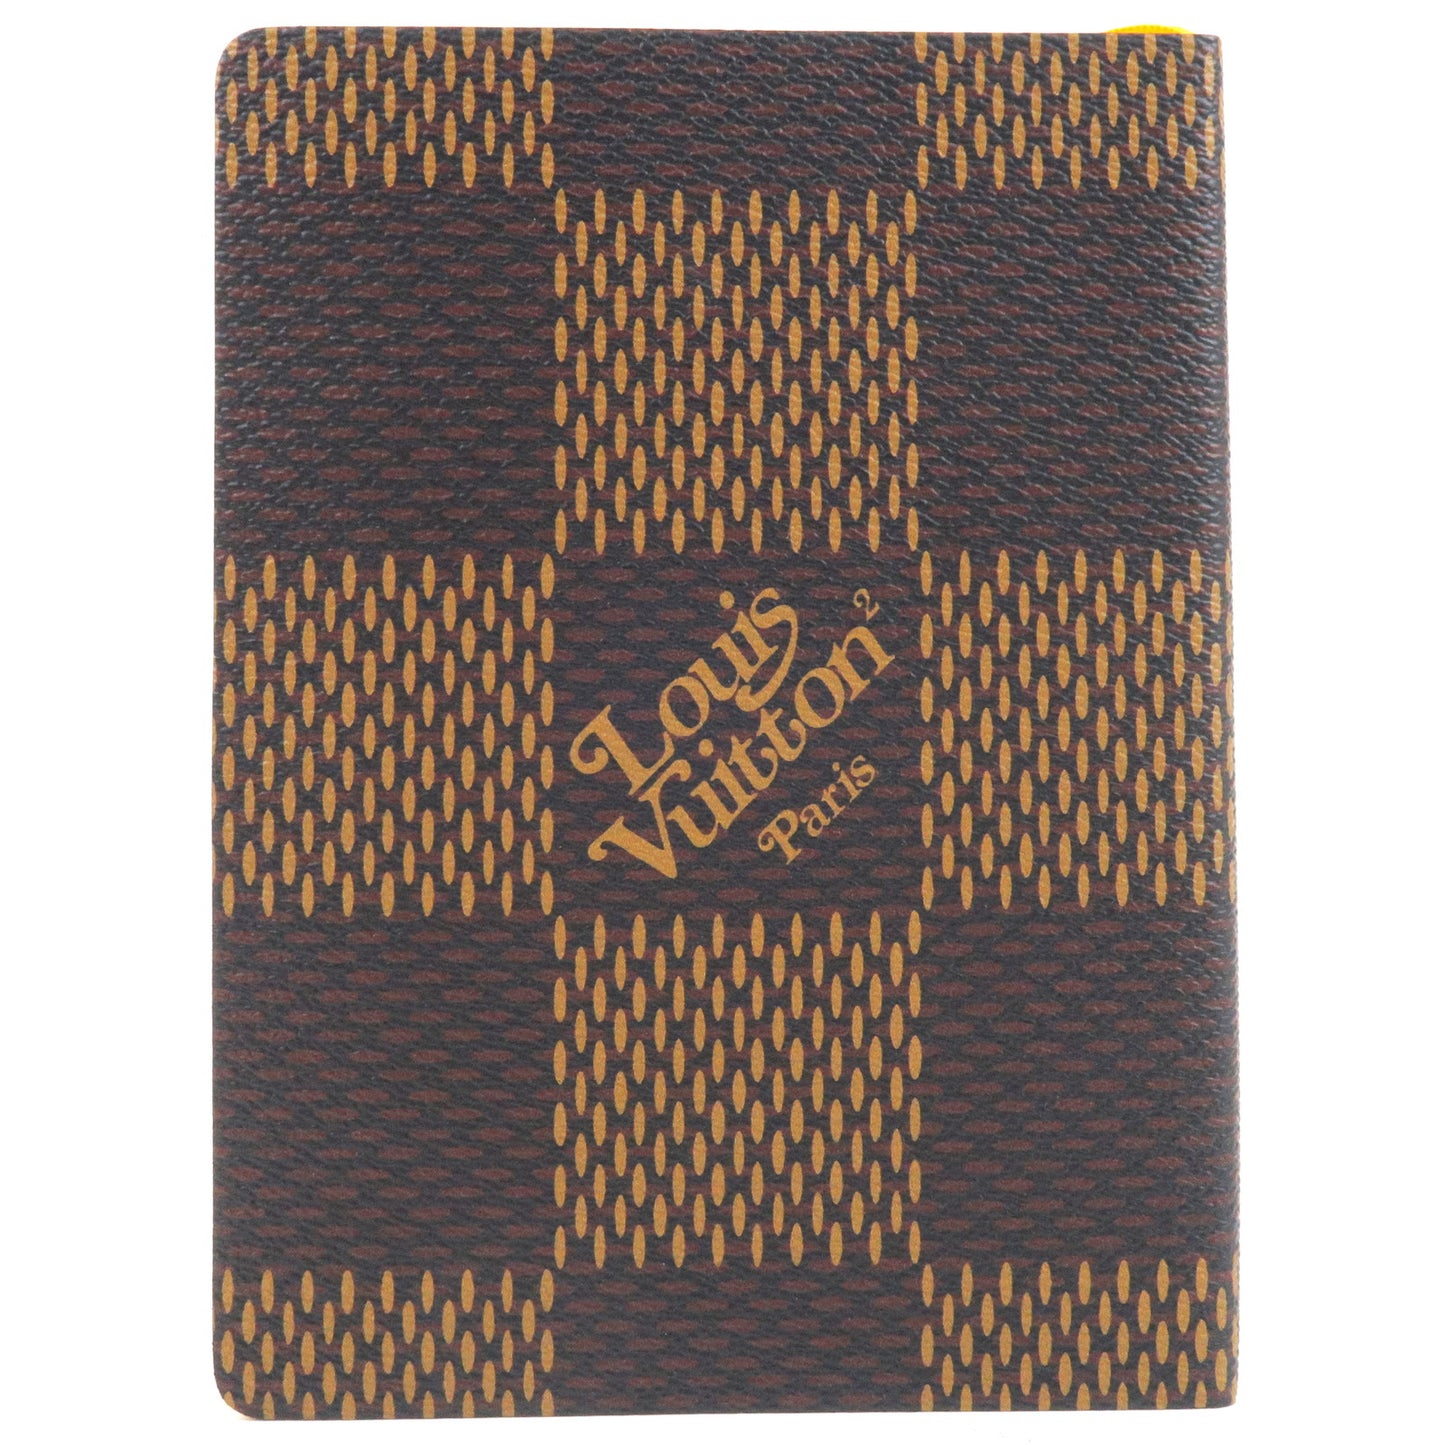 Louis Vuitton Monogram Damier Giant Kaye Clemence Notebook GI0504